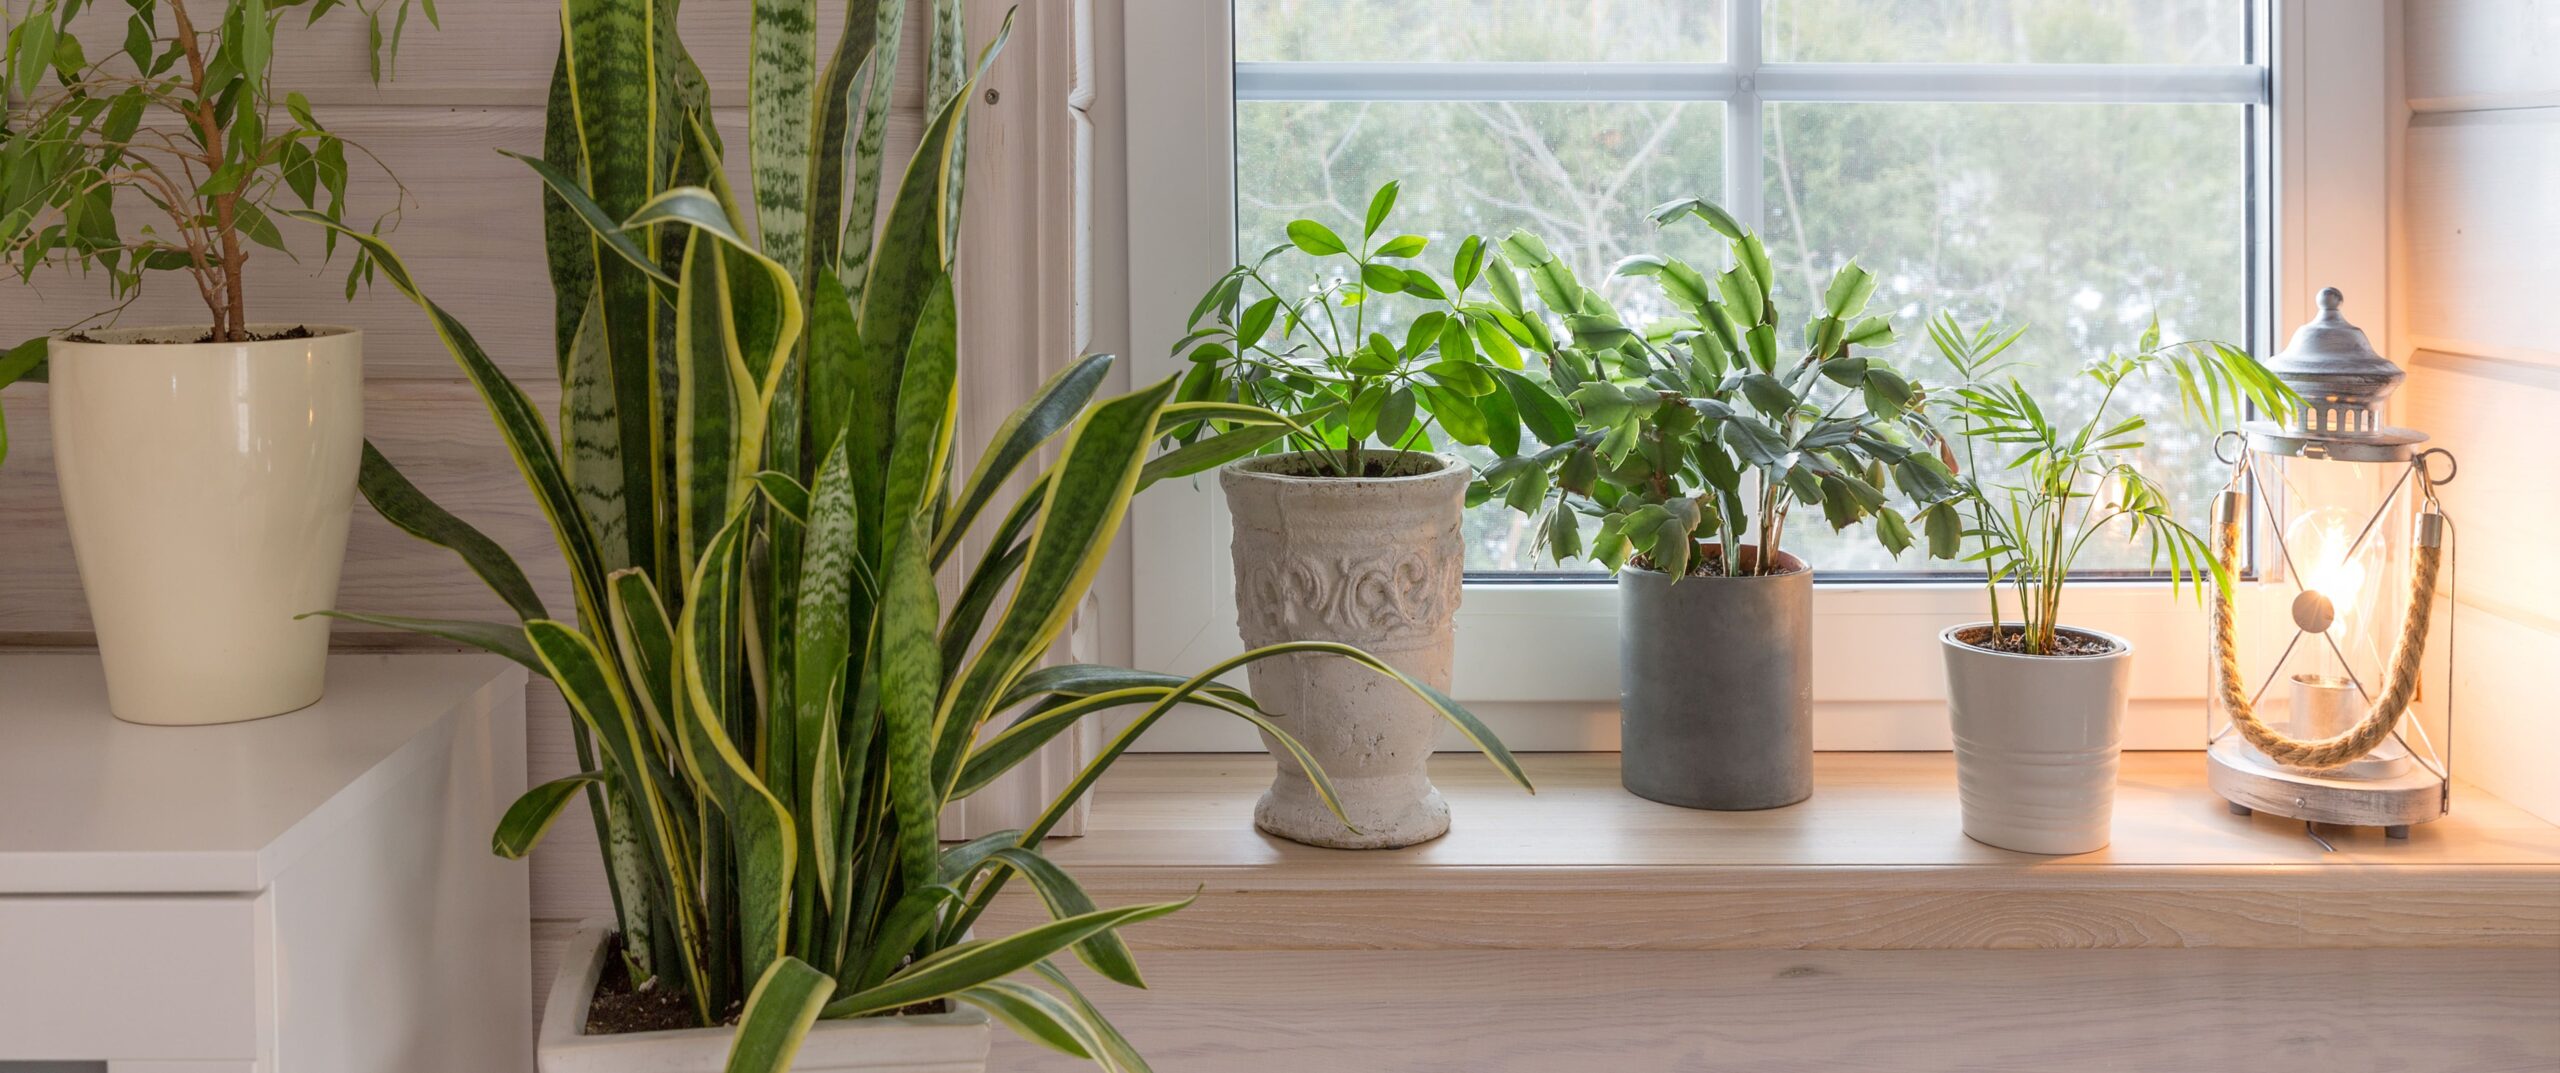 Photographie de diverses variétés de plantes d'intérieur, mises en pots, délicatement posées sur une étagère en bois